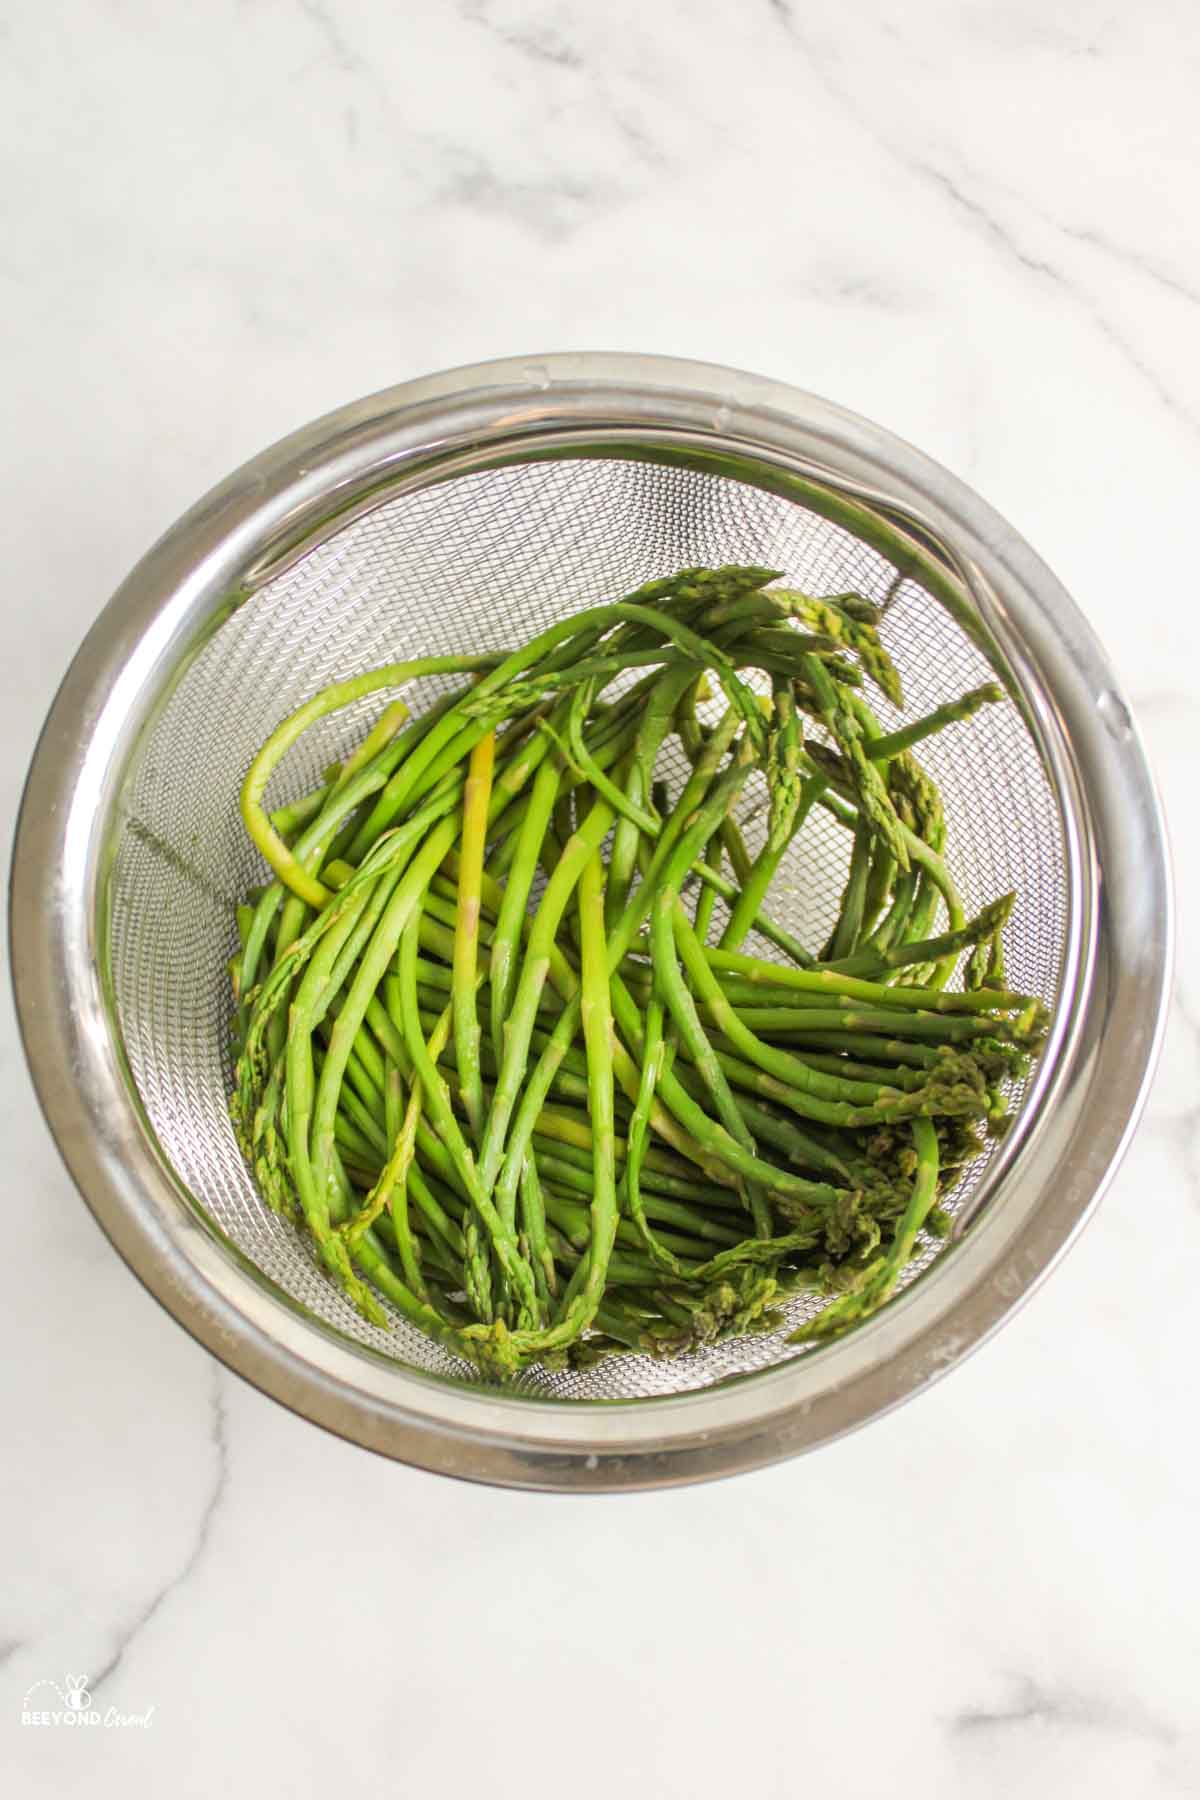 steamed asparagus in instant pot steamer basket